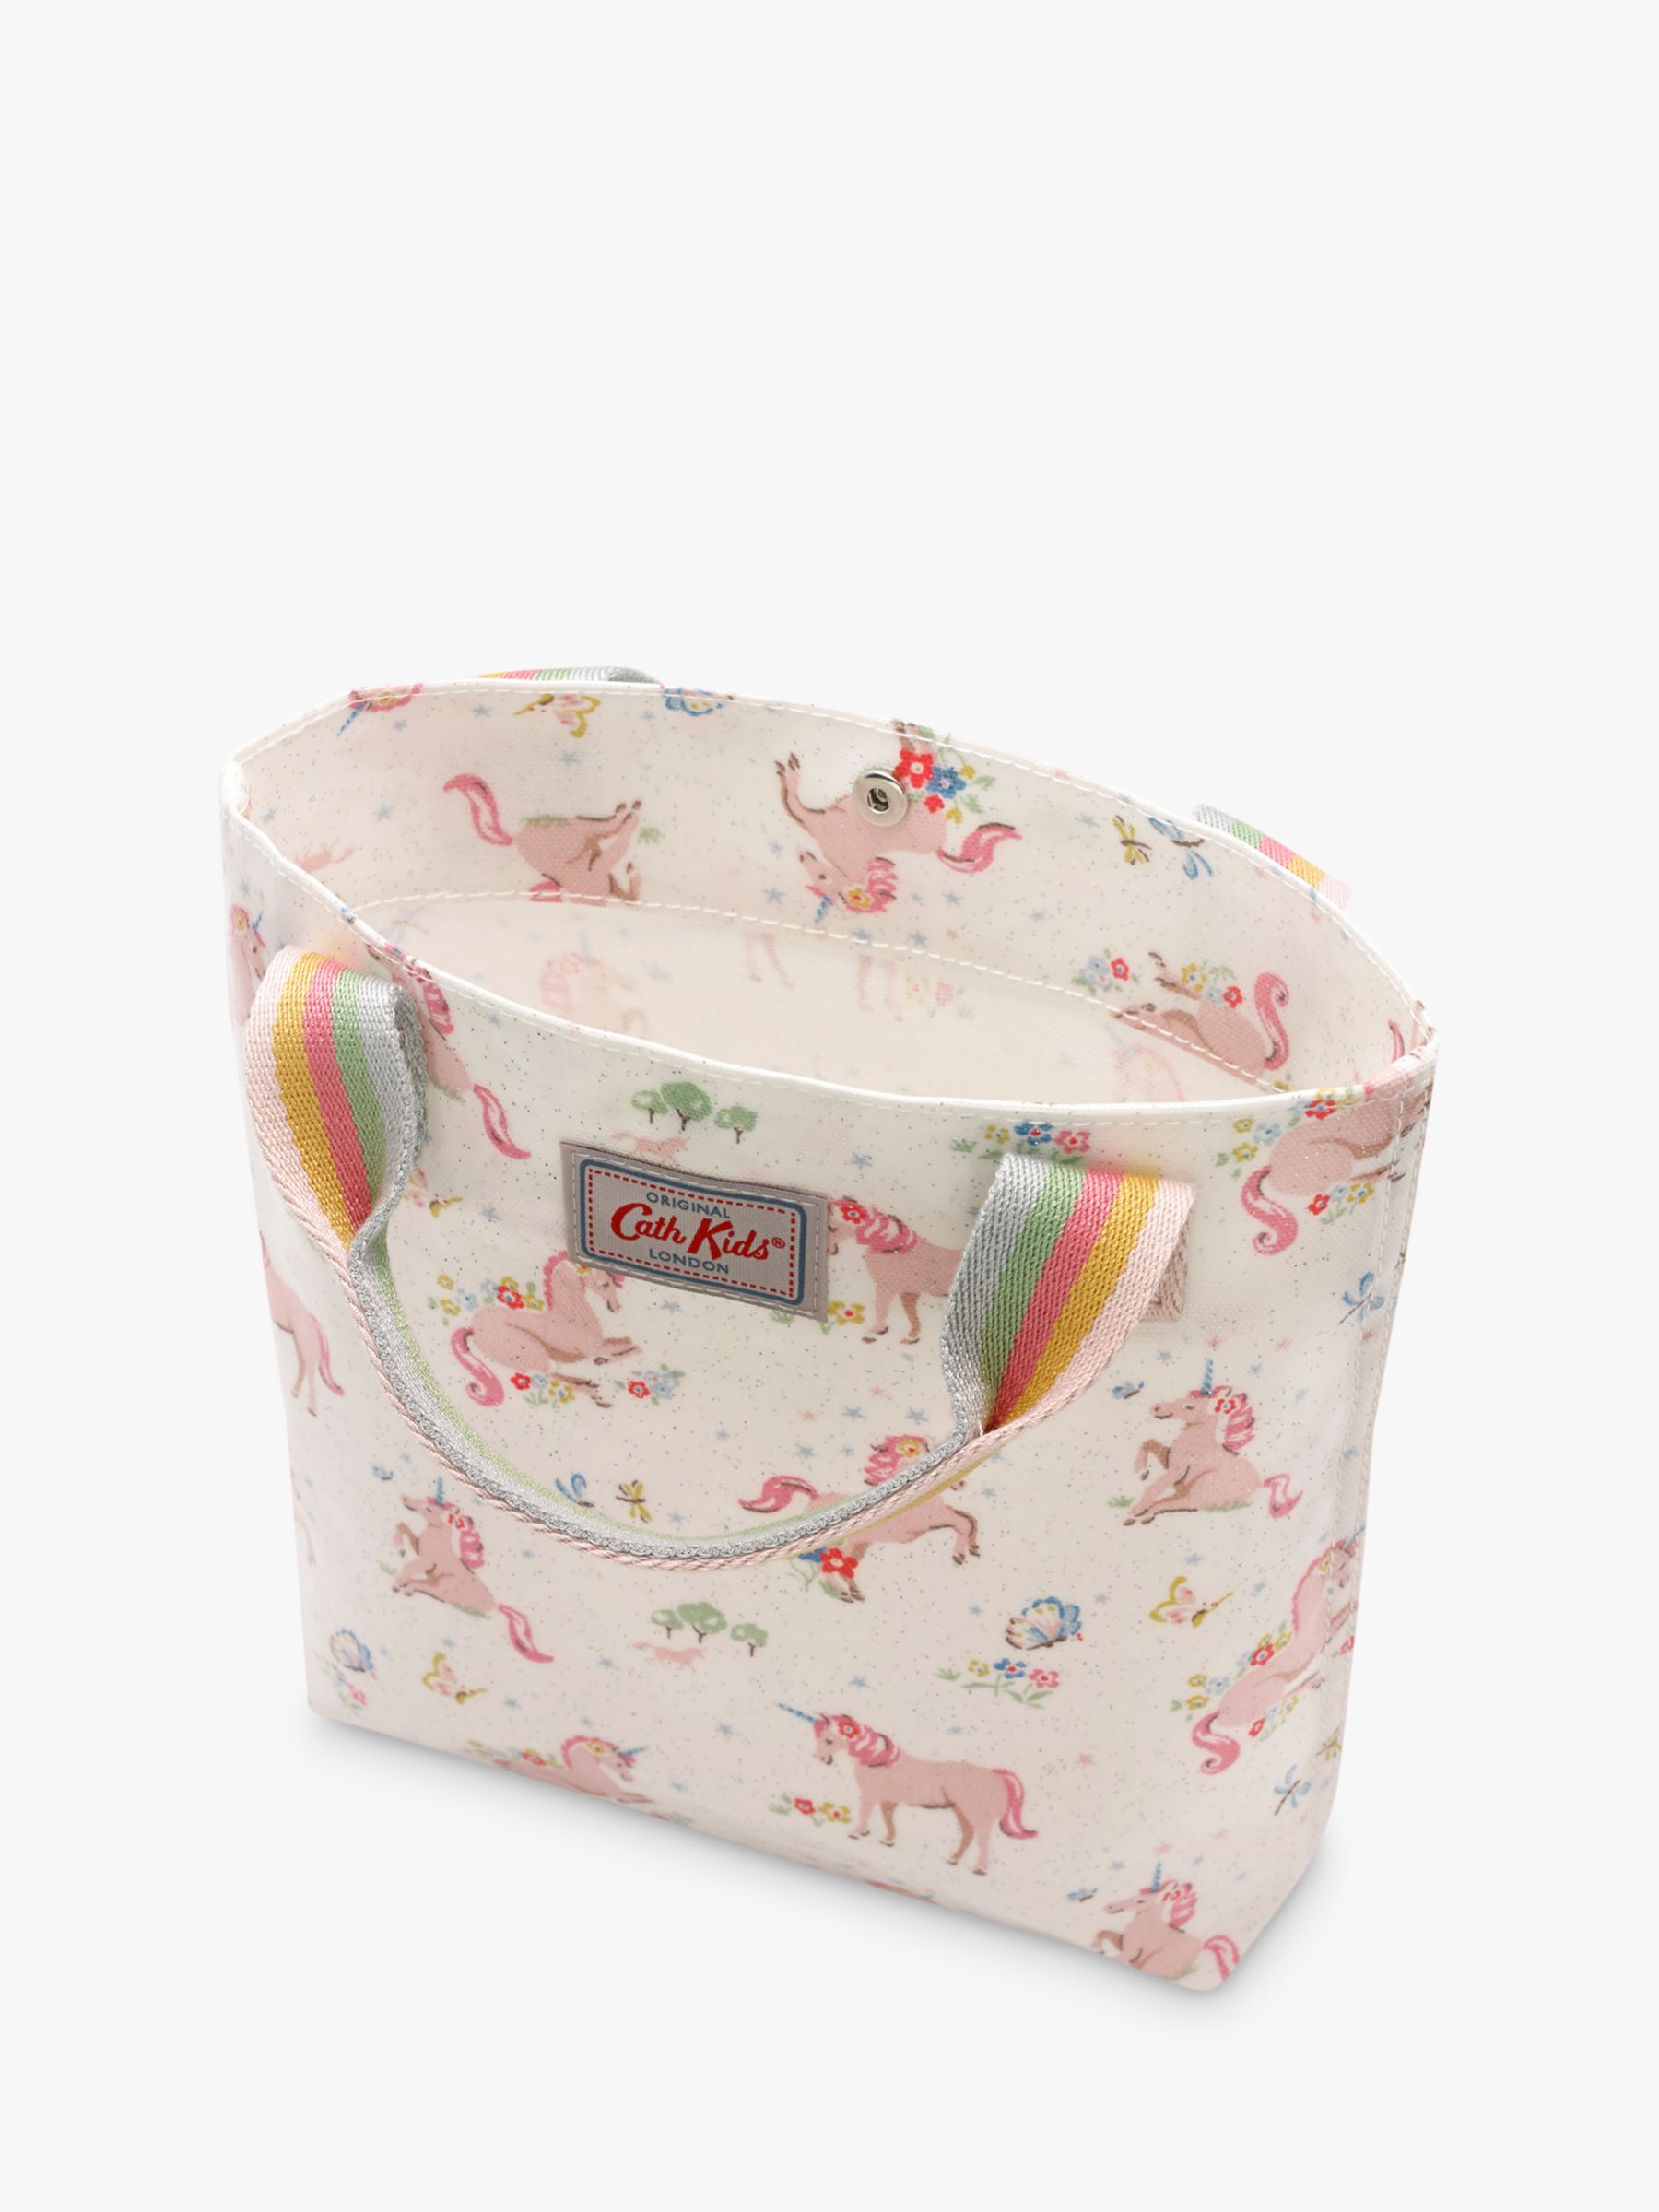 unicorn cath kidston bag